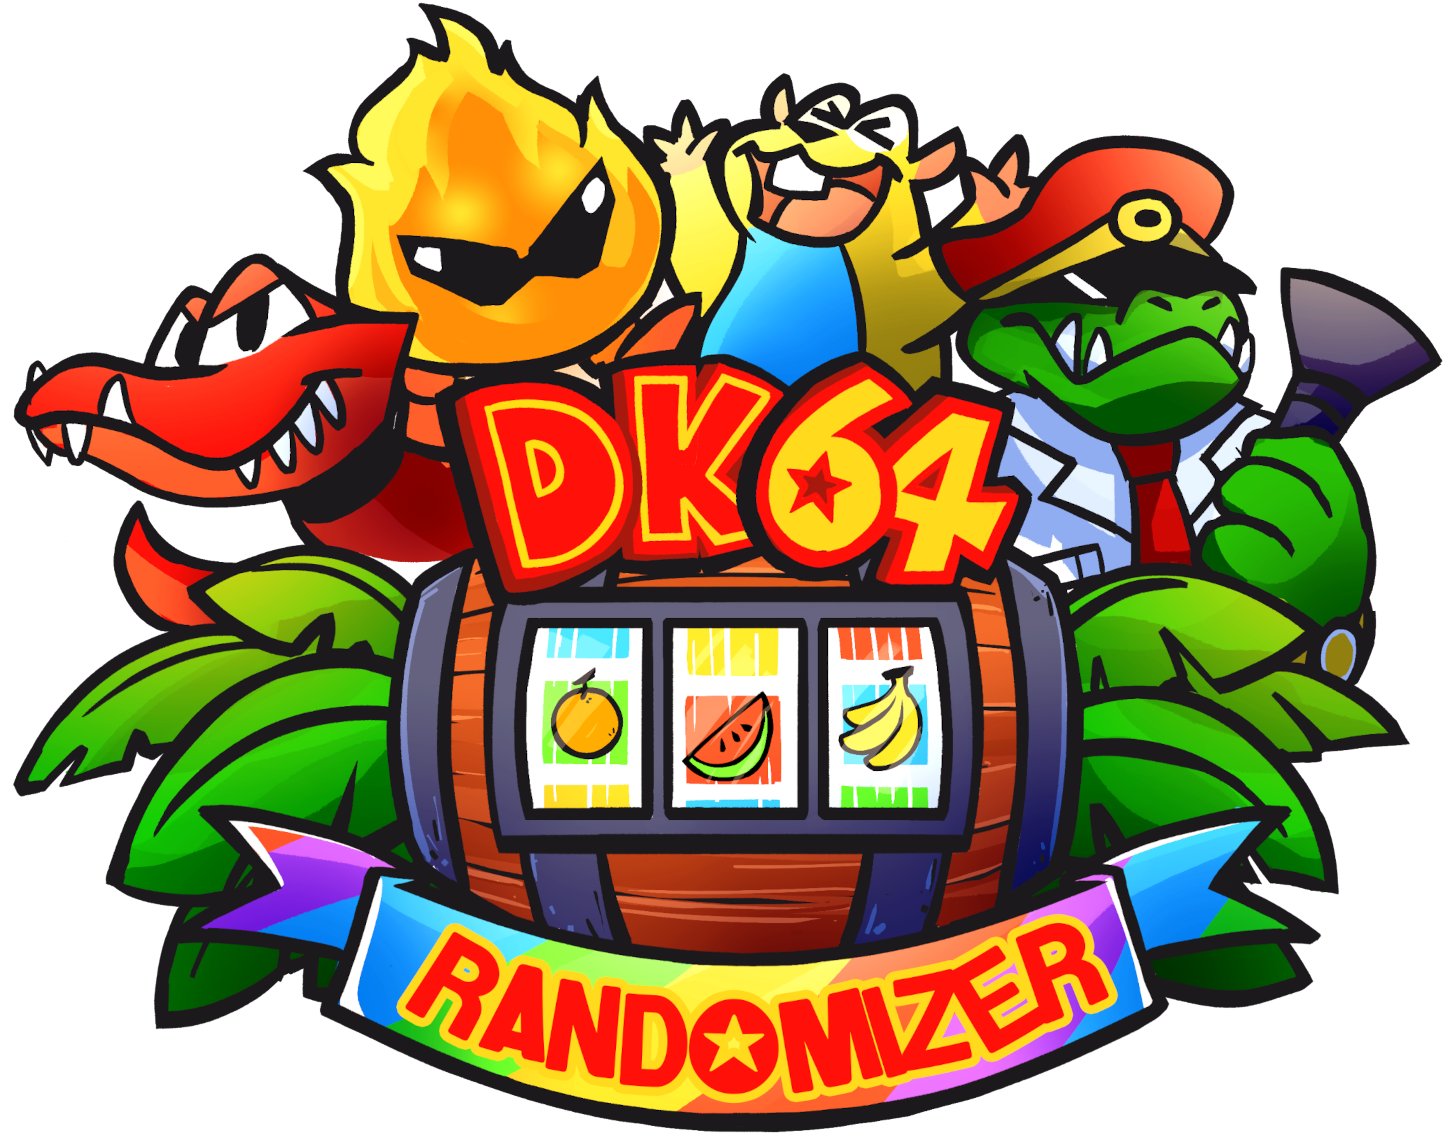 DK64 Randomizer